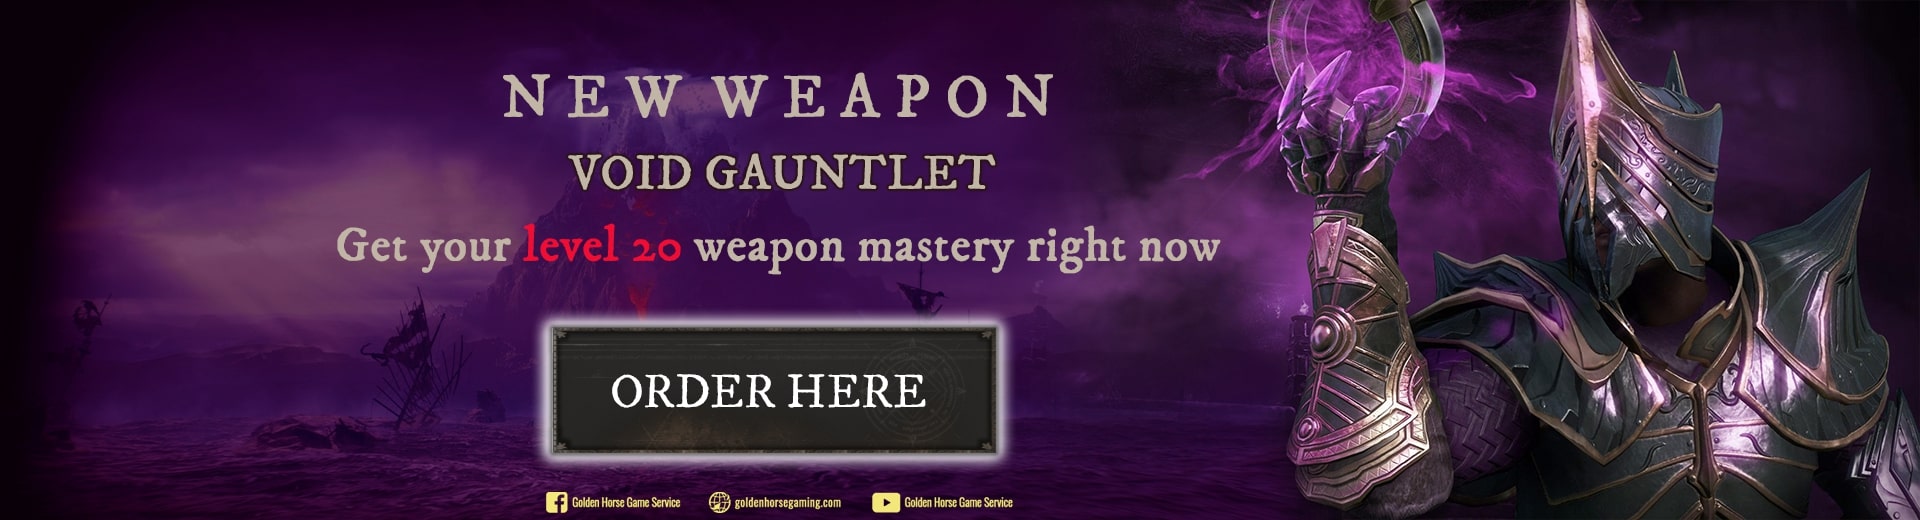 New Weapon Void Gauntlet